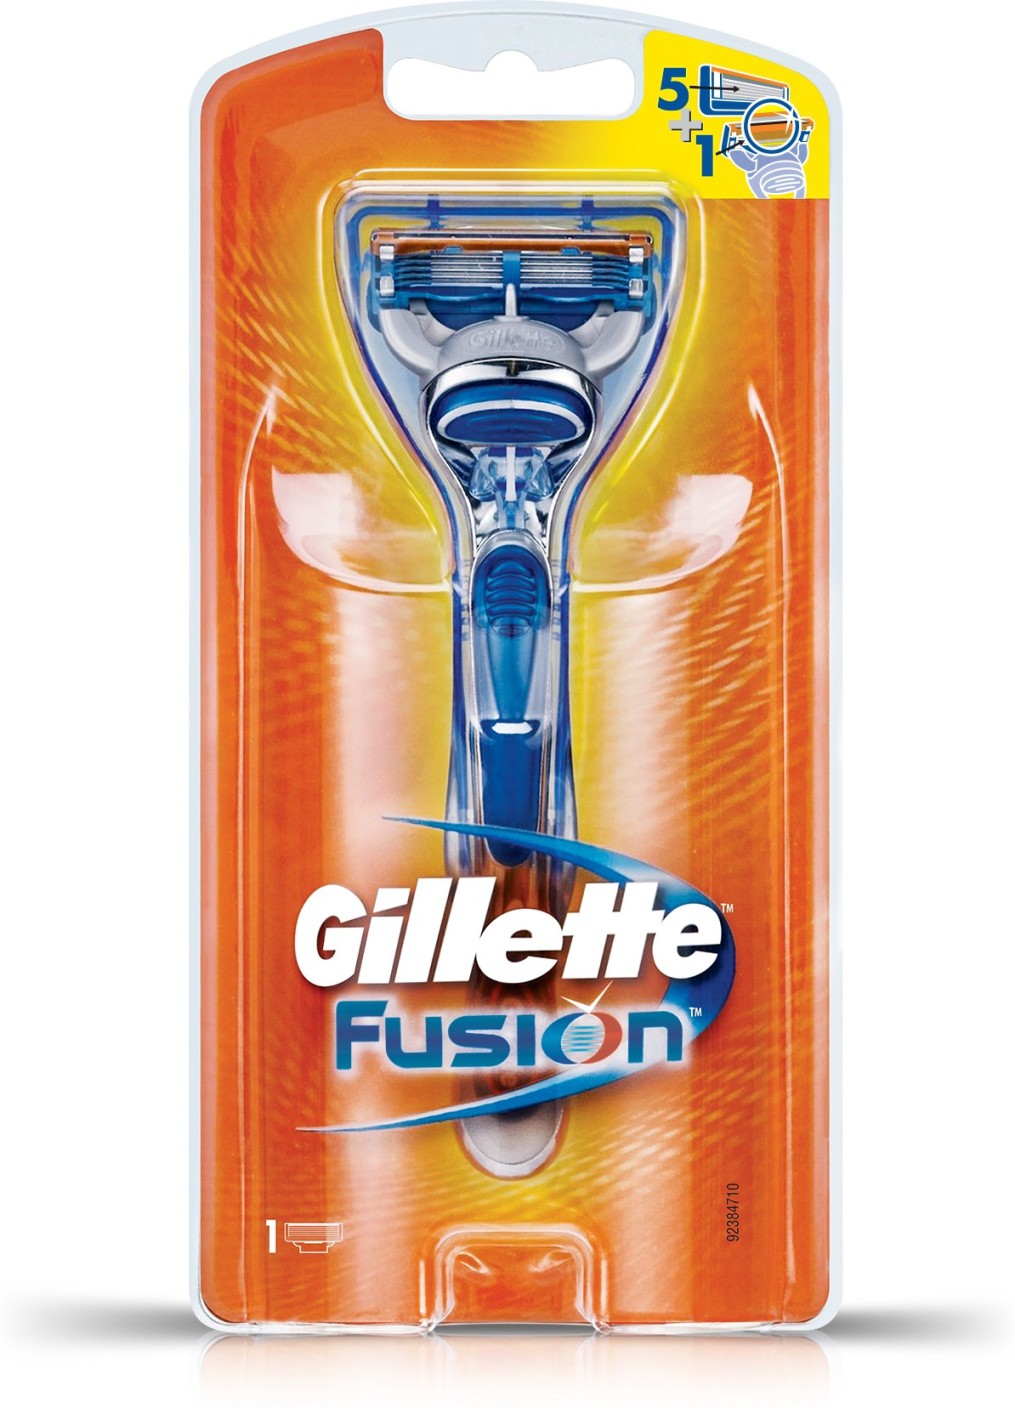 Gillette Fusion Razor - Price in India, Buy Gillette 